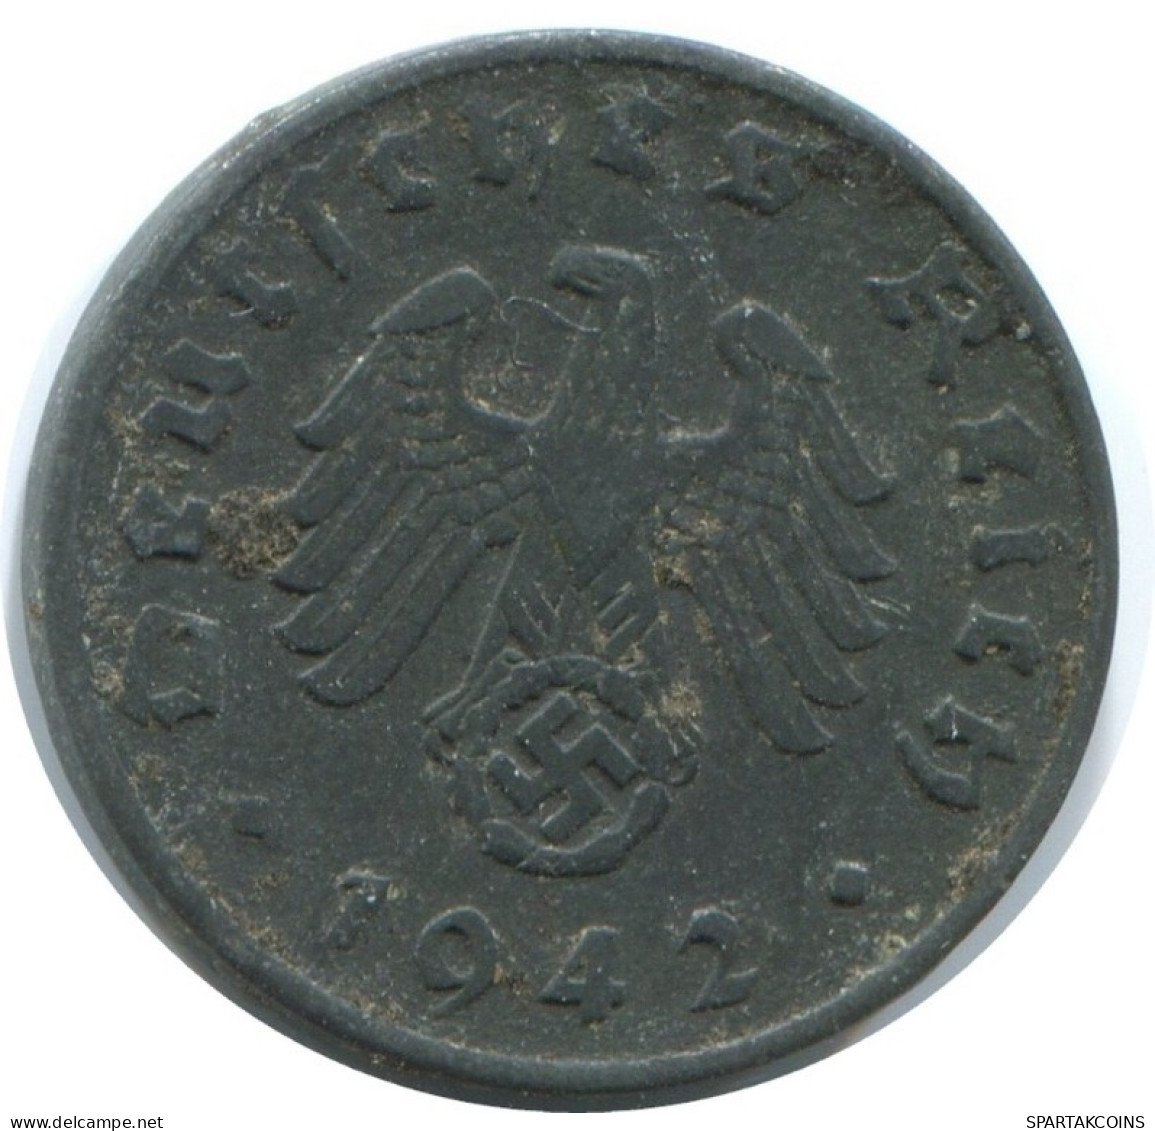 1 REICHSPFENNIG 1942 A GERMANY Coin #AE255.U.A - 1 Reichspfennig